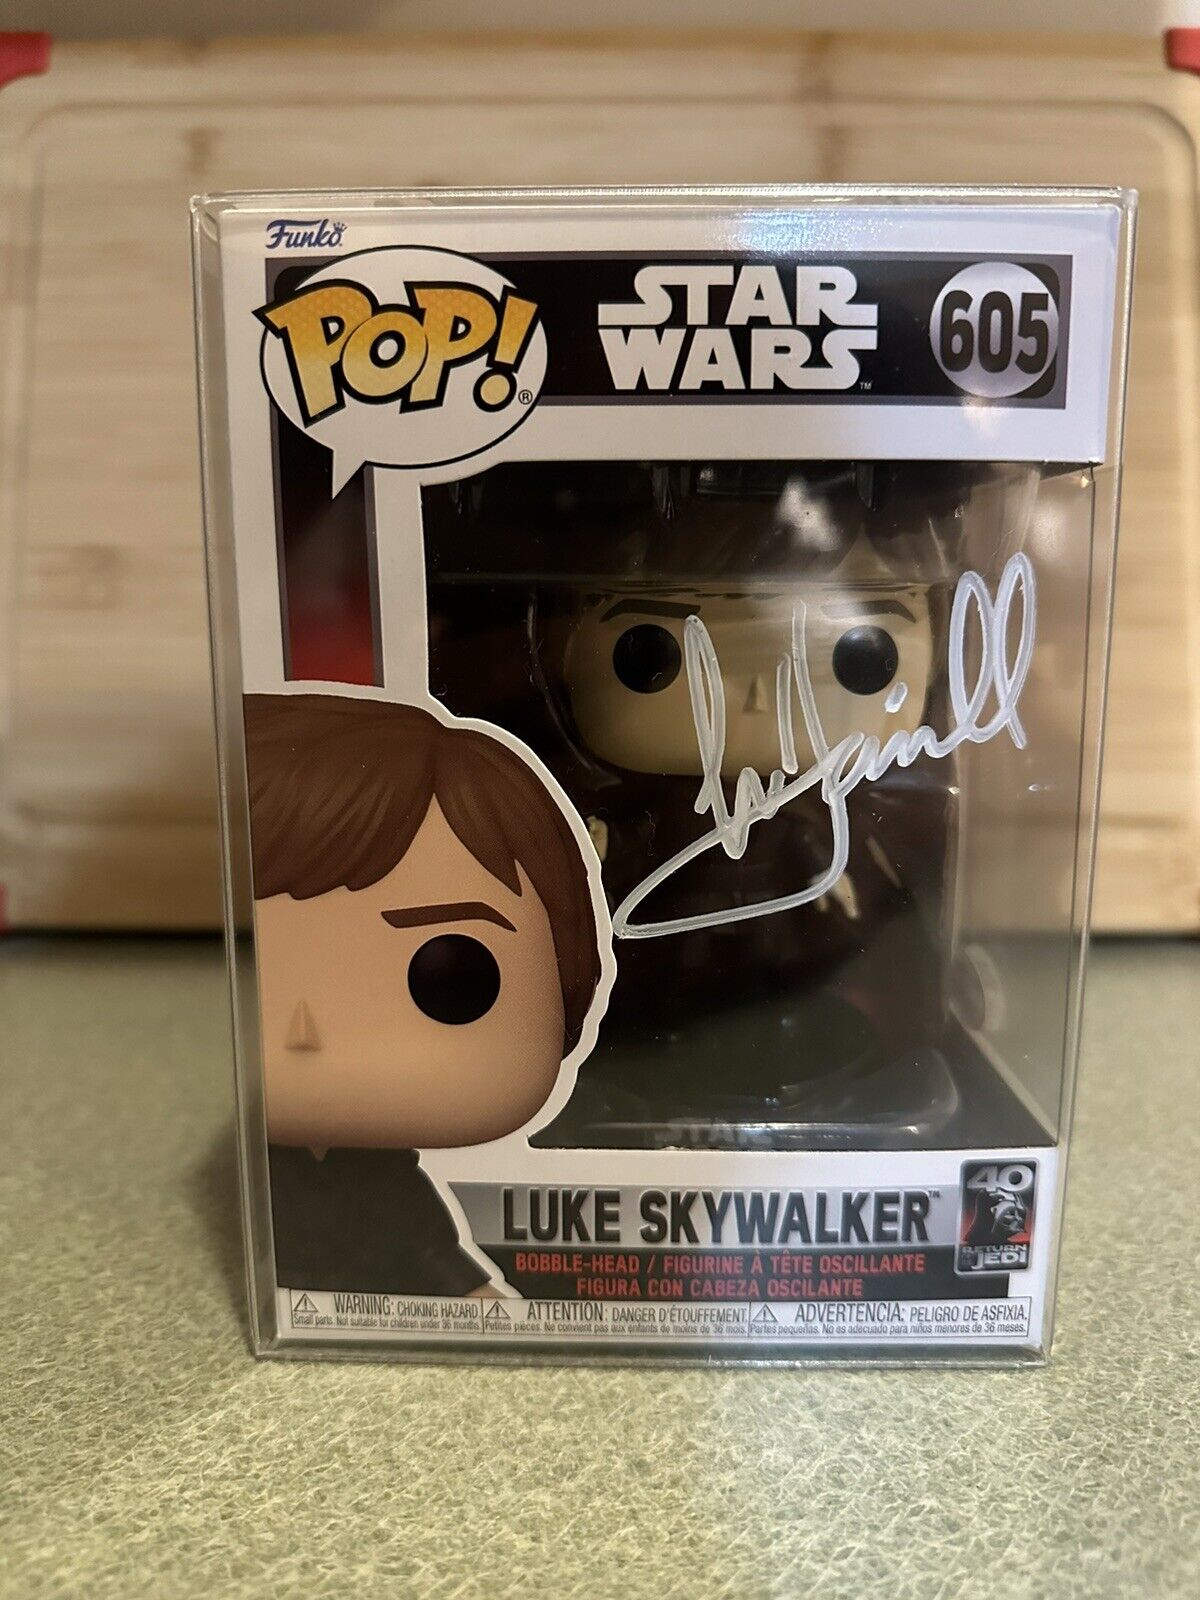 Star Wars: Luke Skywalker Signed Funko Pop *Mark Hamill* WITH COA